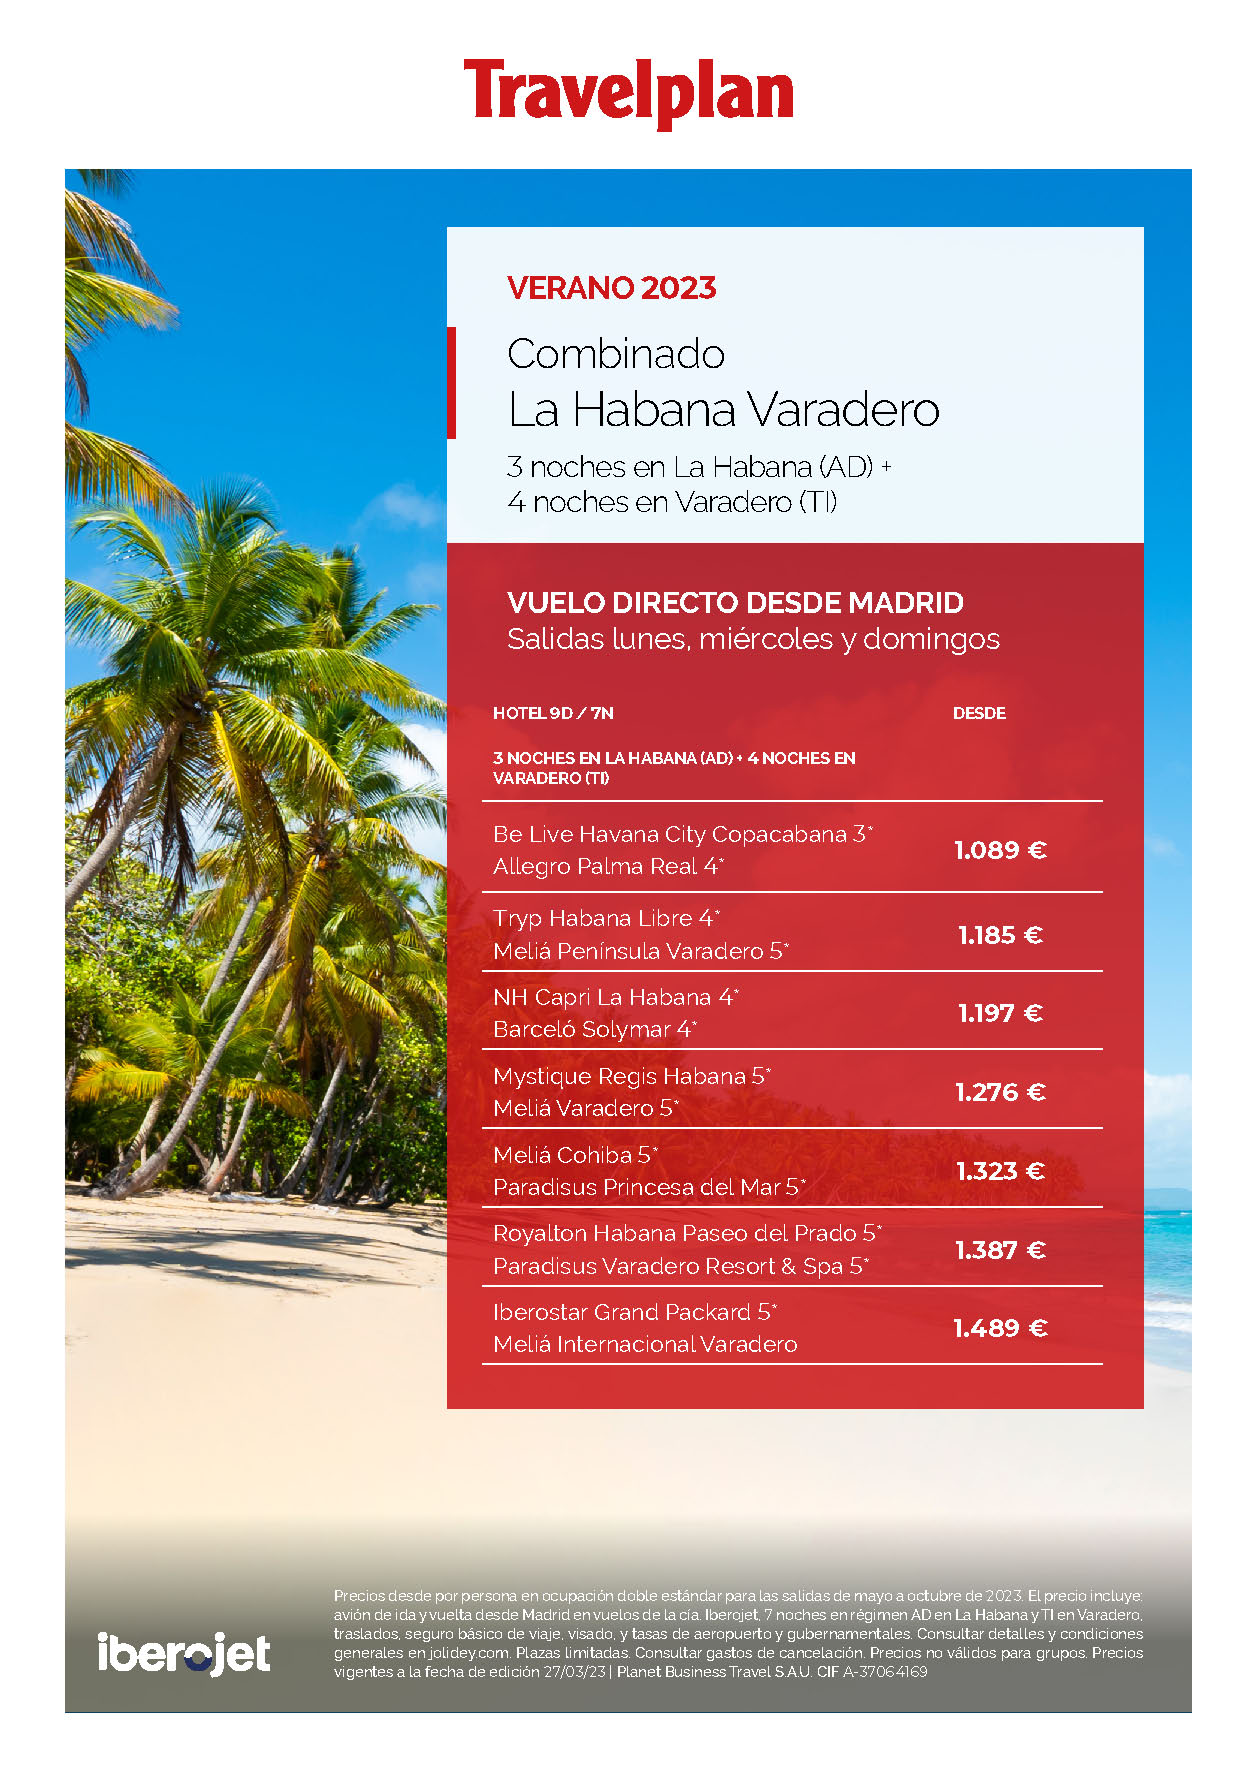 Oferta Travelplan Verano 2023 Combinado La Habana AD Varadero Todo Incluido 9 dias salidas en vuelo directo desde Madrid